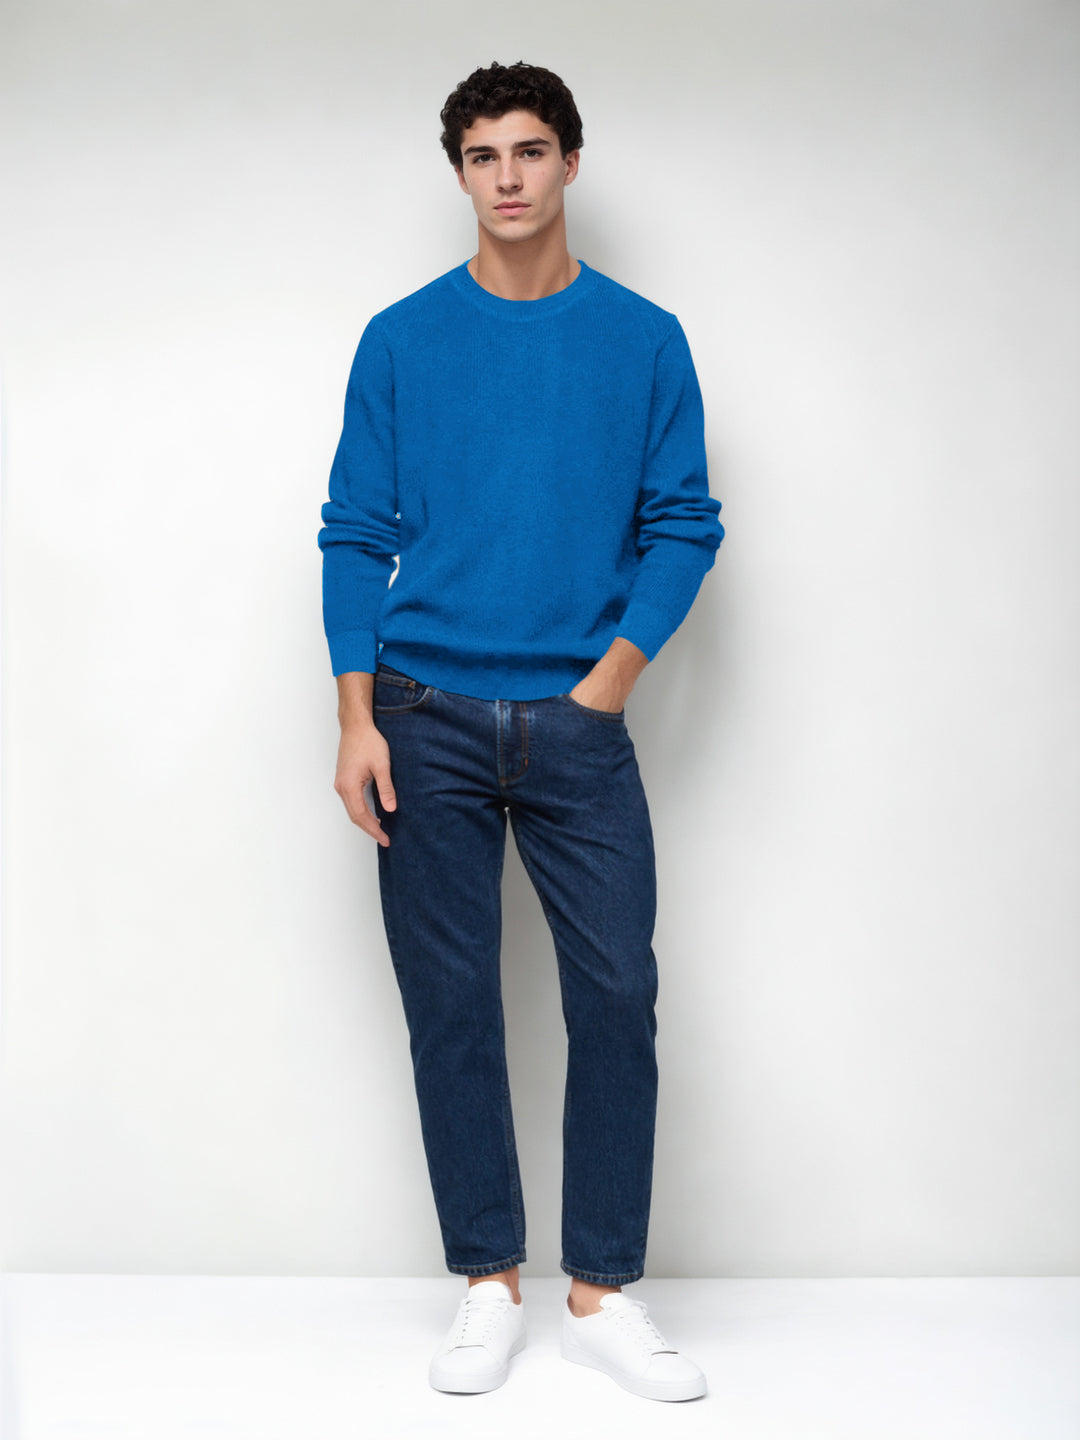 Hemsters Royal Blue Knitted Full Sleevs Sweatshirt For Men